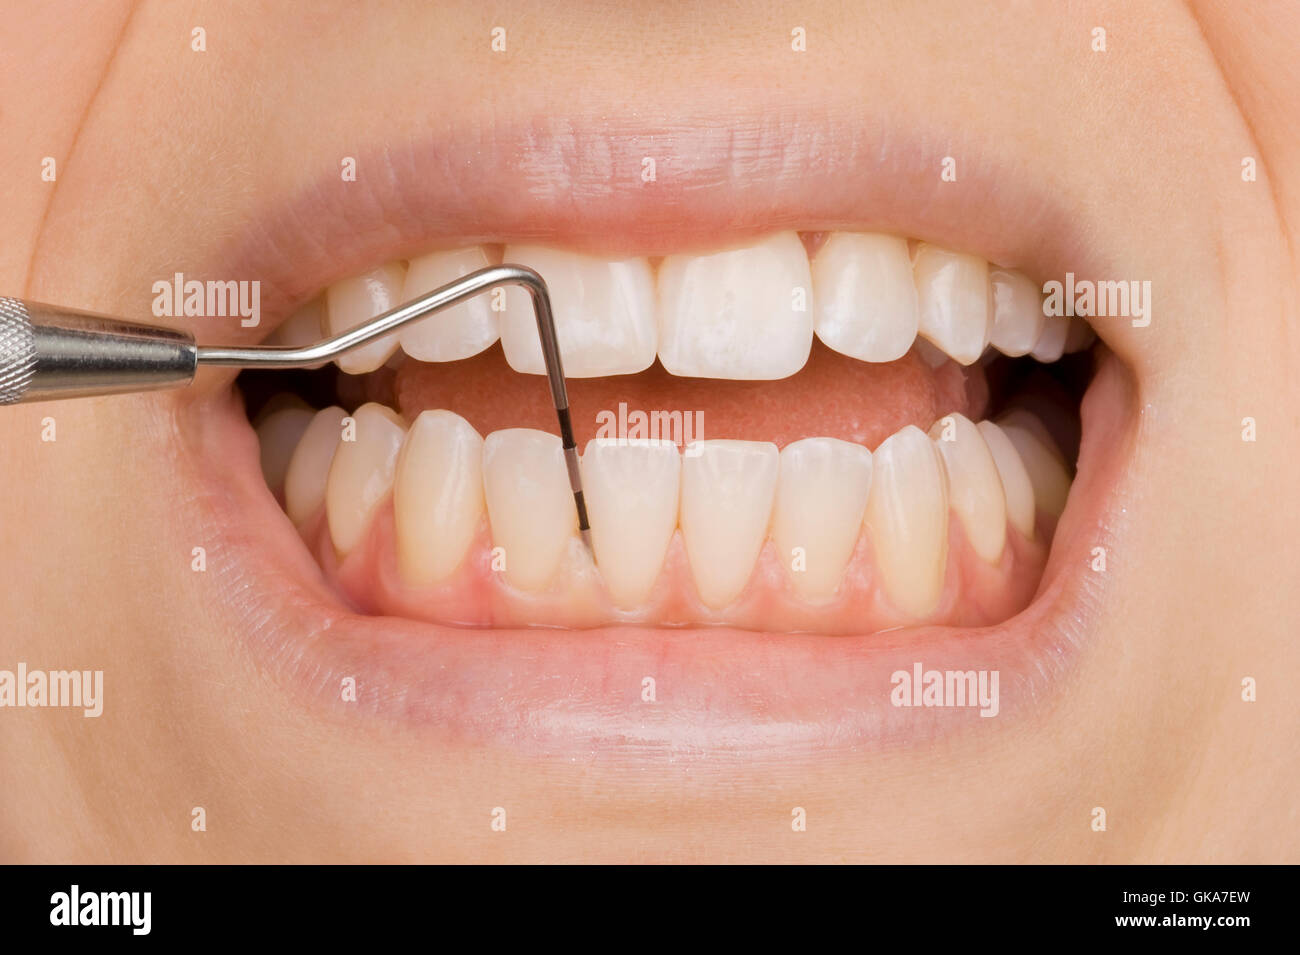 Germi dei denti immagini e fotografie stock ad alta risoluzione - Alamy